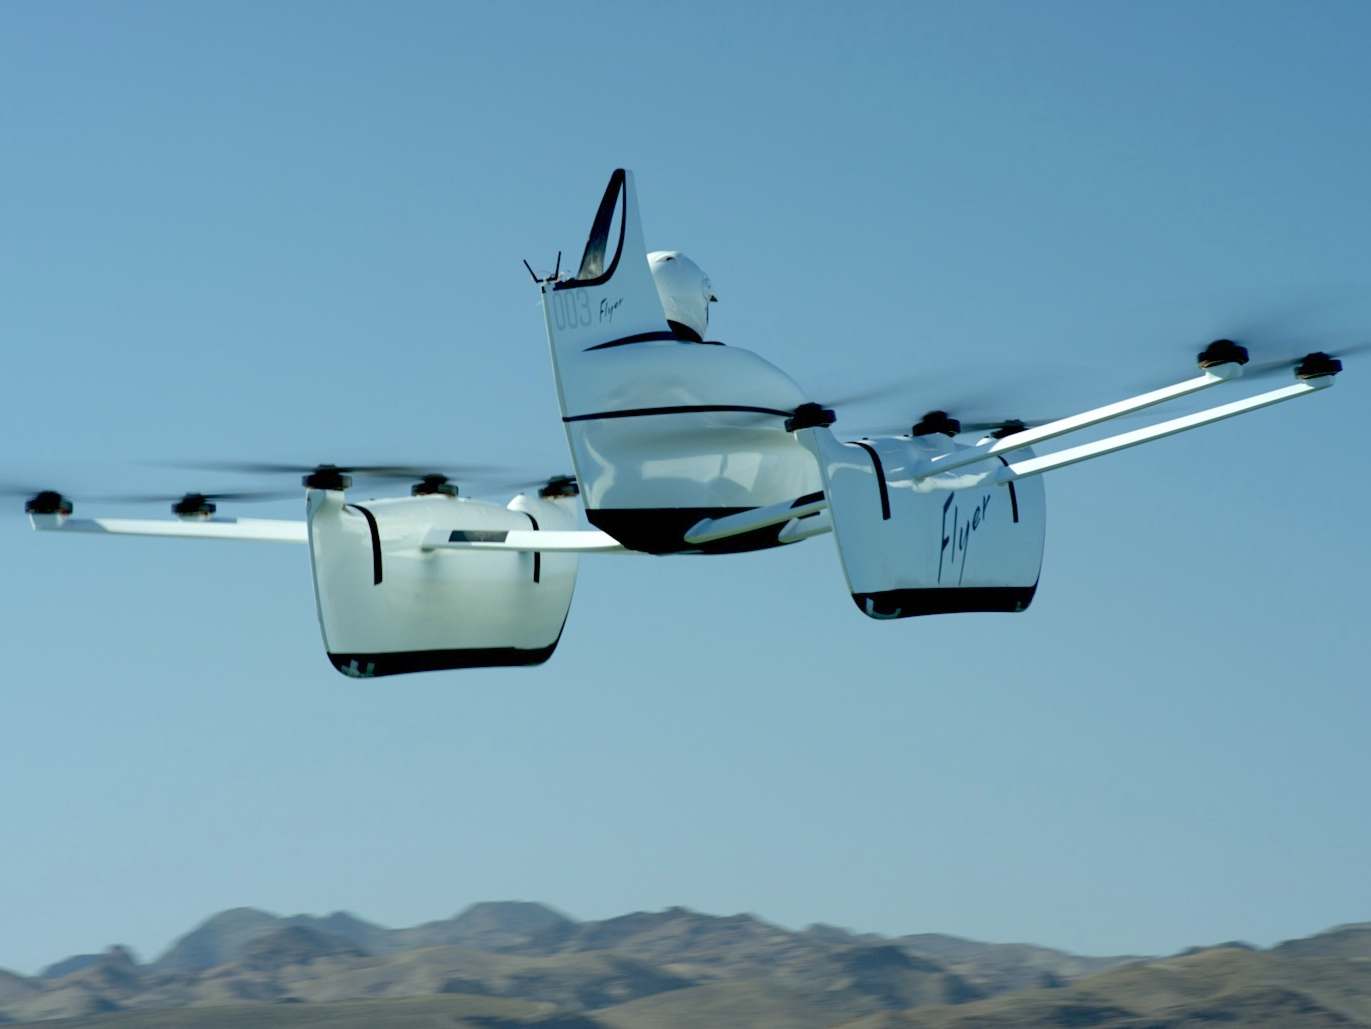 De Flyer van Kitty Hawk vliegt straks misschien met 300 kilometer per uur boven jouw stad. Foto: Kitty Hawk